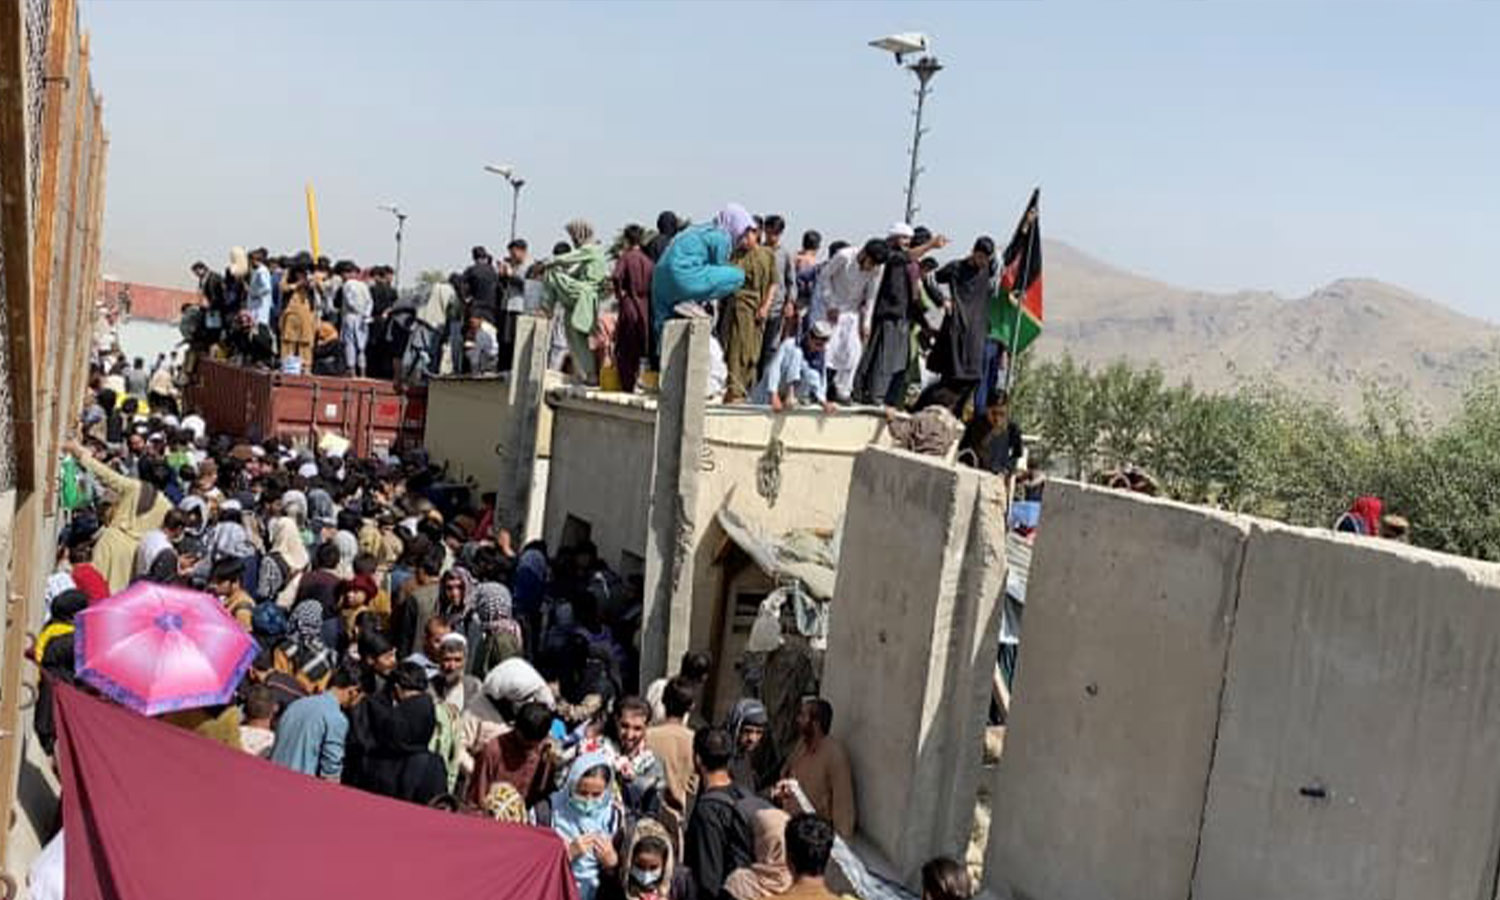 صورة ثابتة مأخوذة من مقطع فيديو تظهر حشودًا من الناس بالقرب من مطار كابل، أفغانستان في 23 من آب 2021 (رويترز)